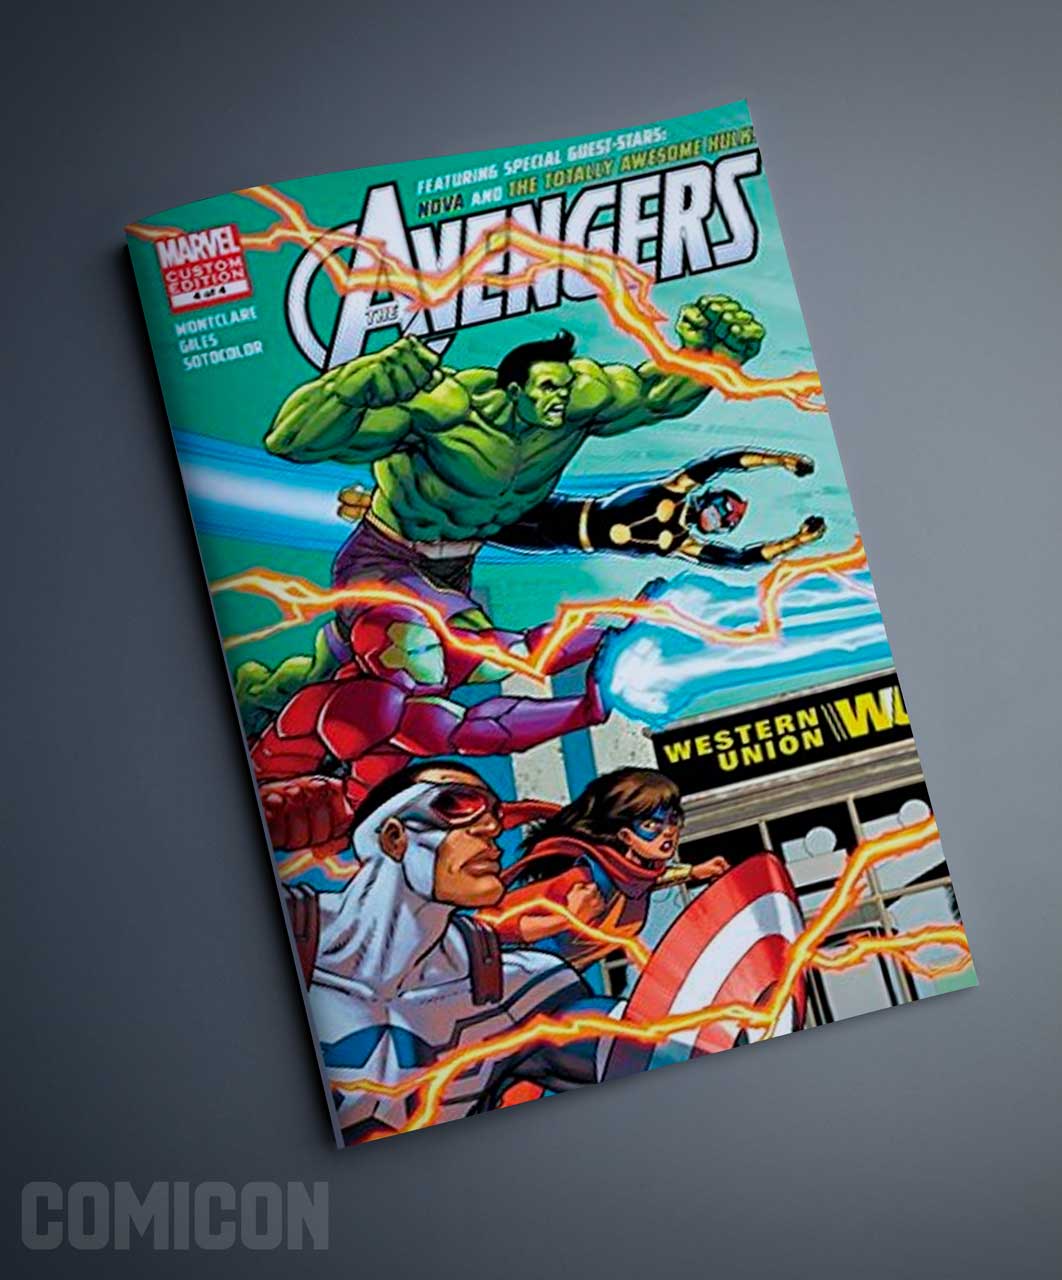 کمیک Avengers Featuring Hulk & Nova